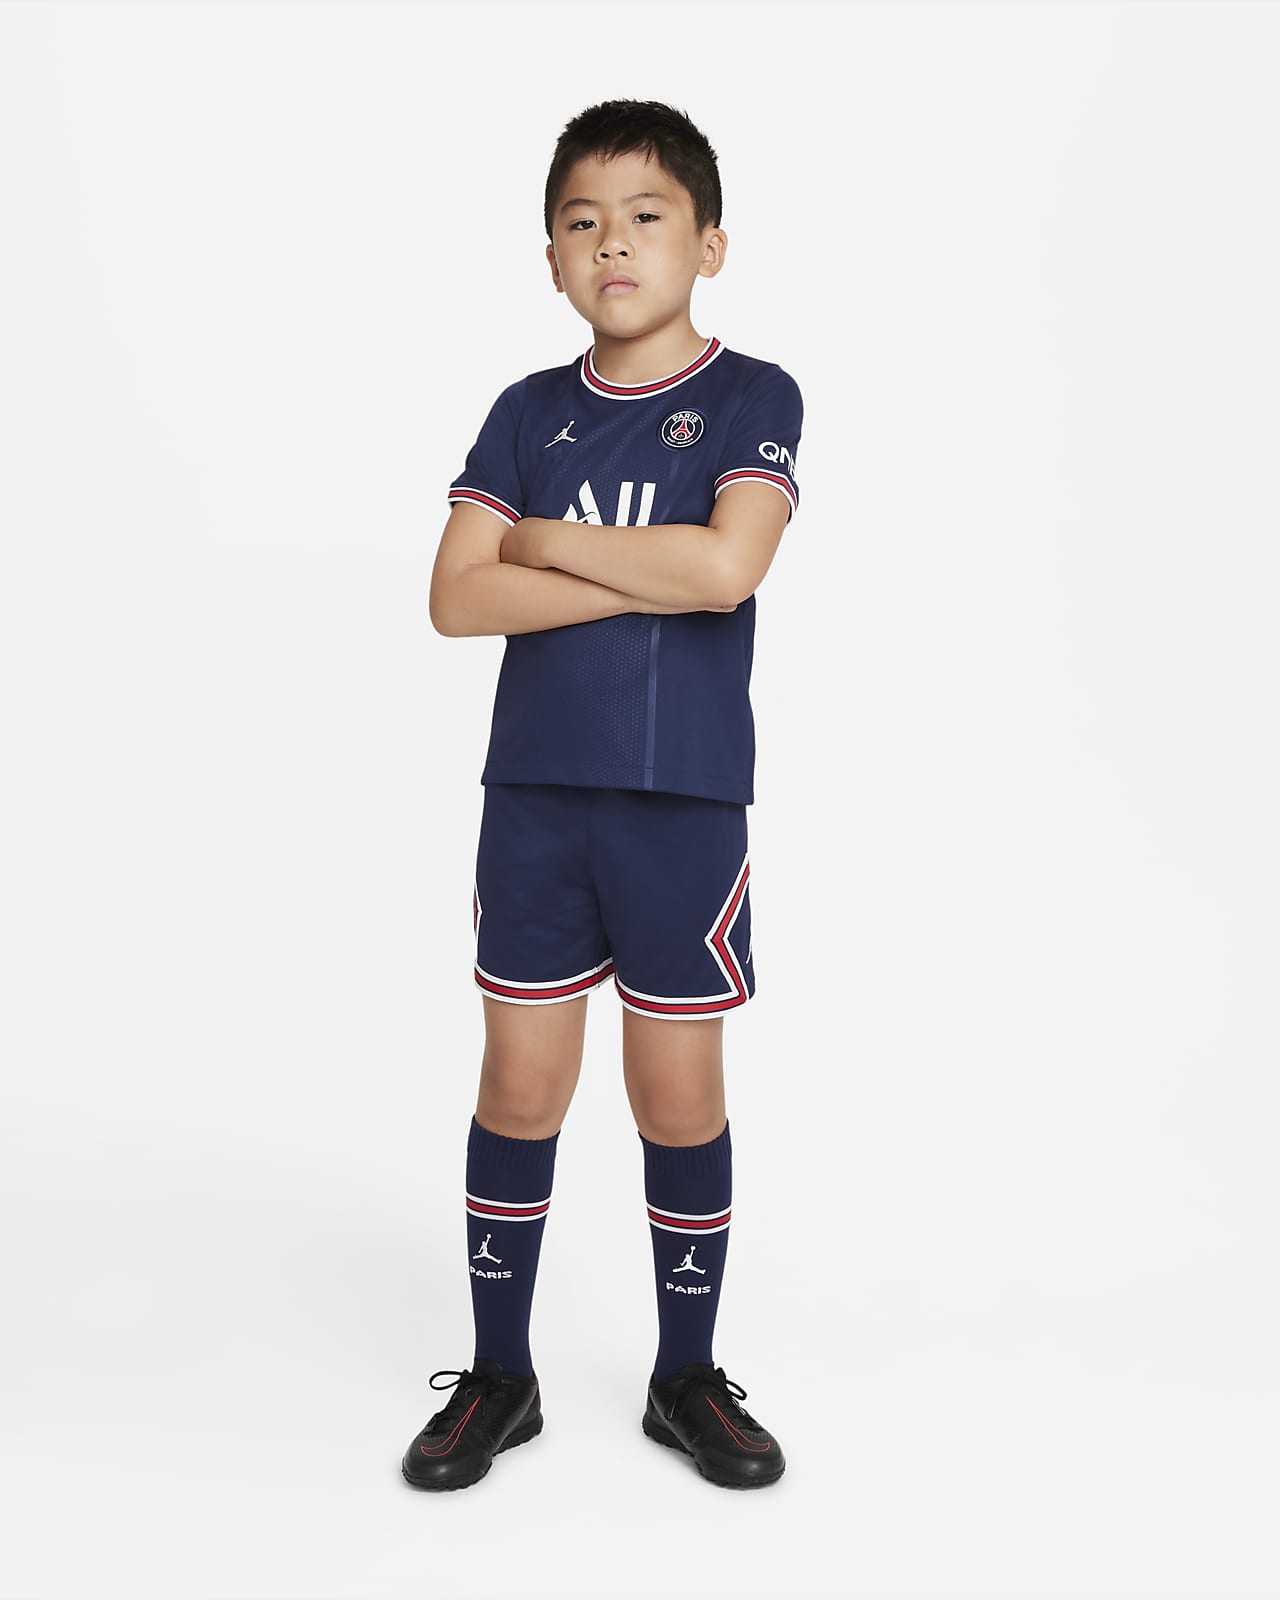 Domácí fotbalová souprava Paris Saint-Germain 2021/22 pro malé děti